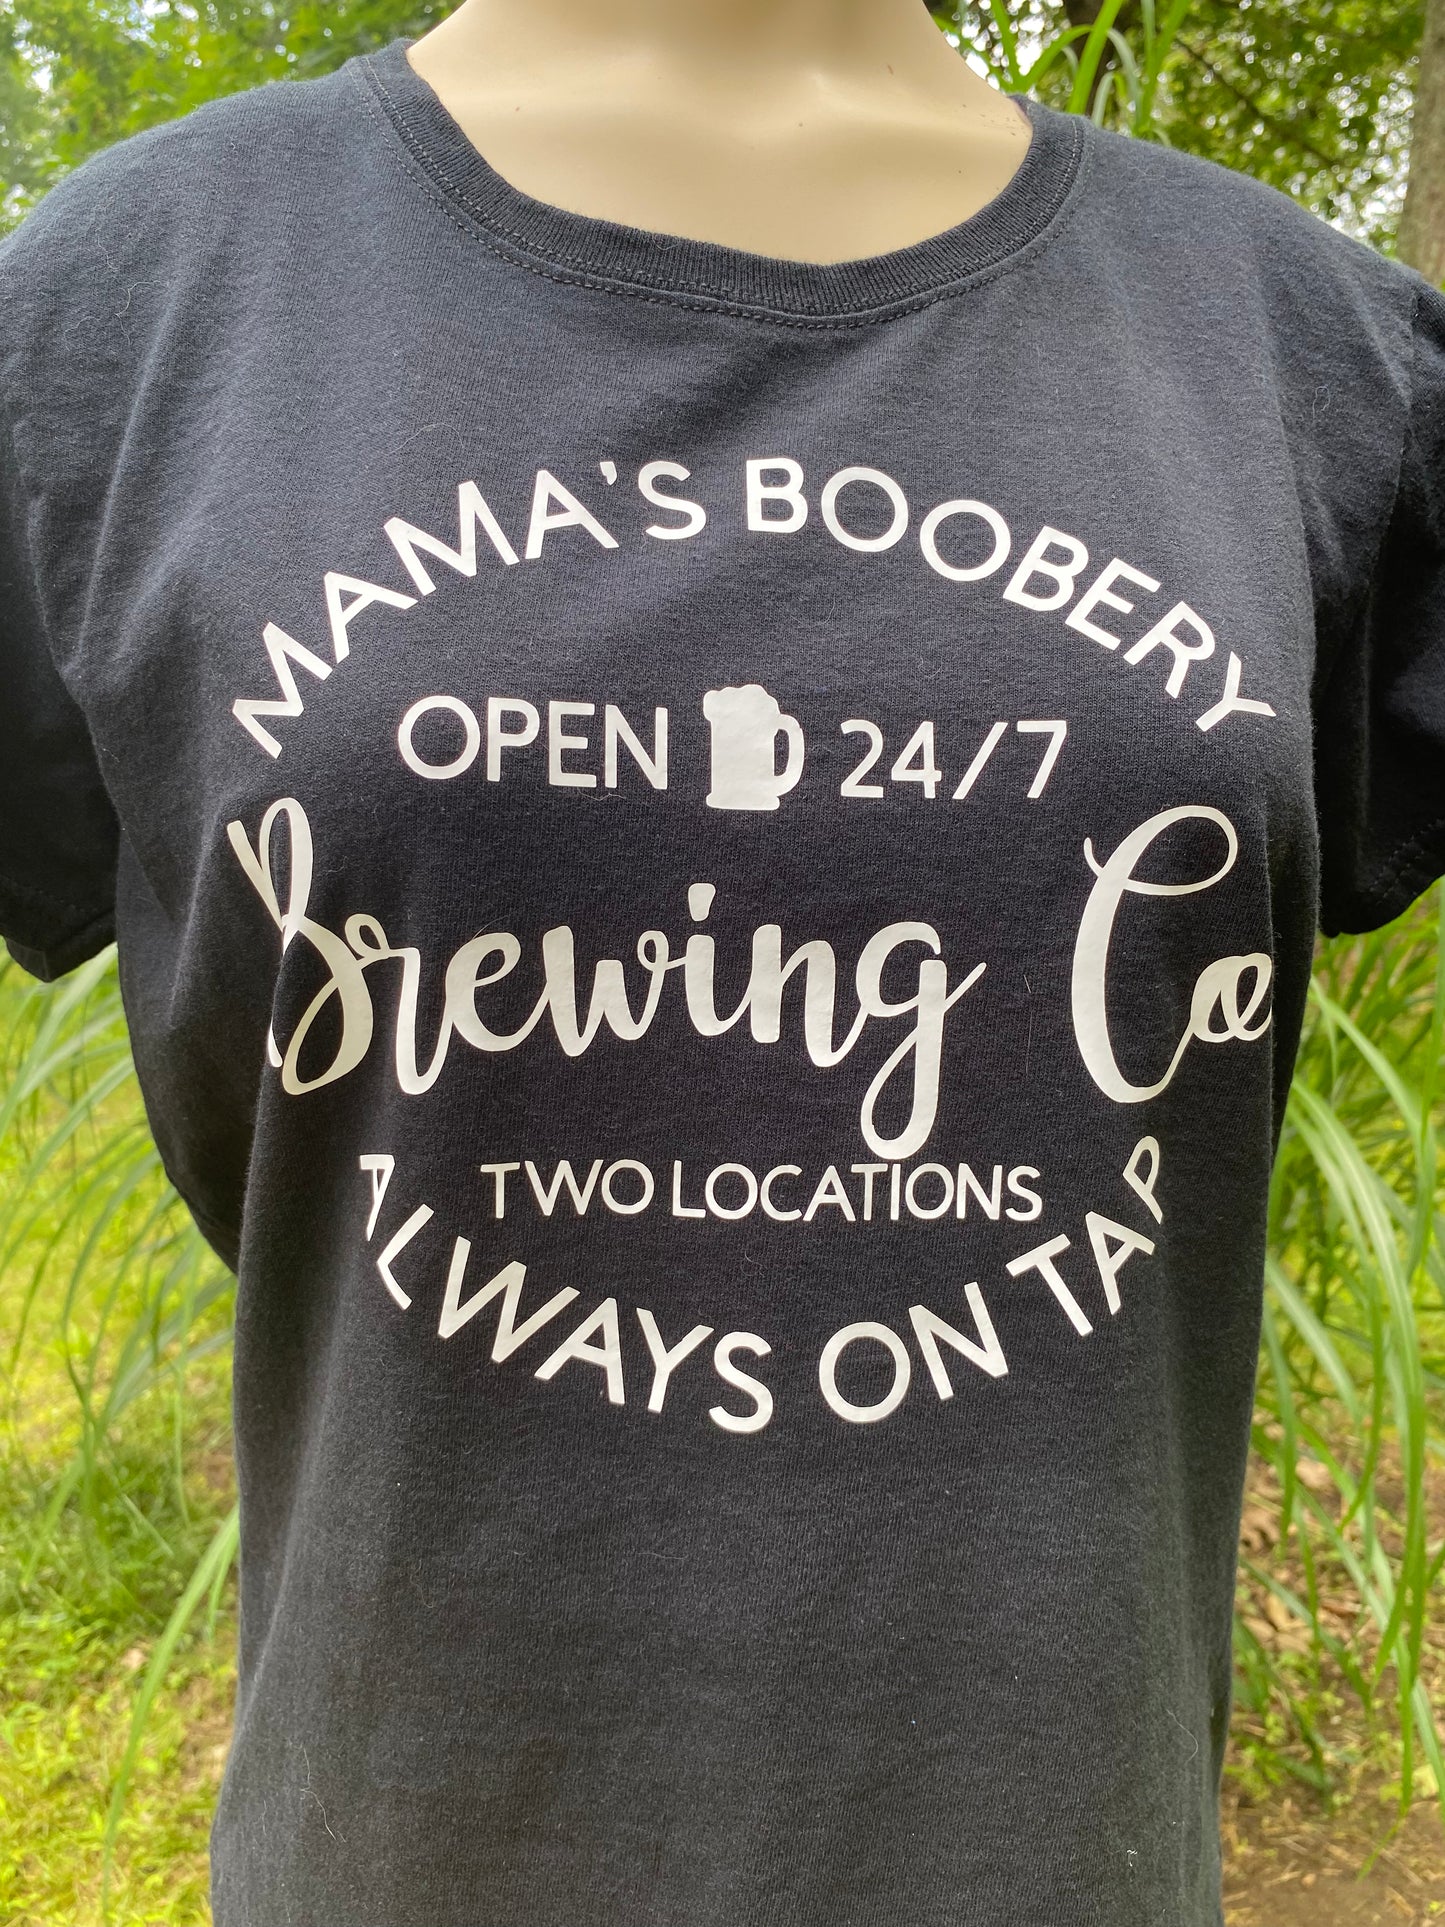 Mamas Boobery t-shirt